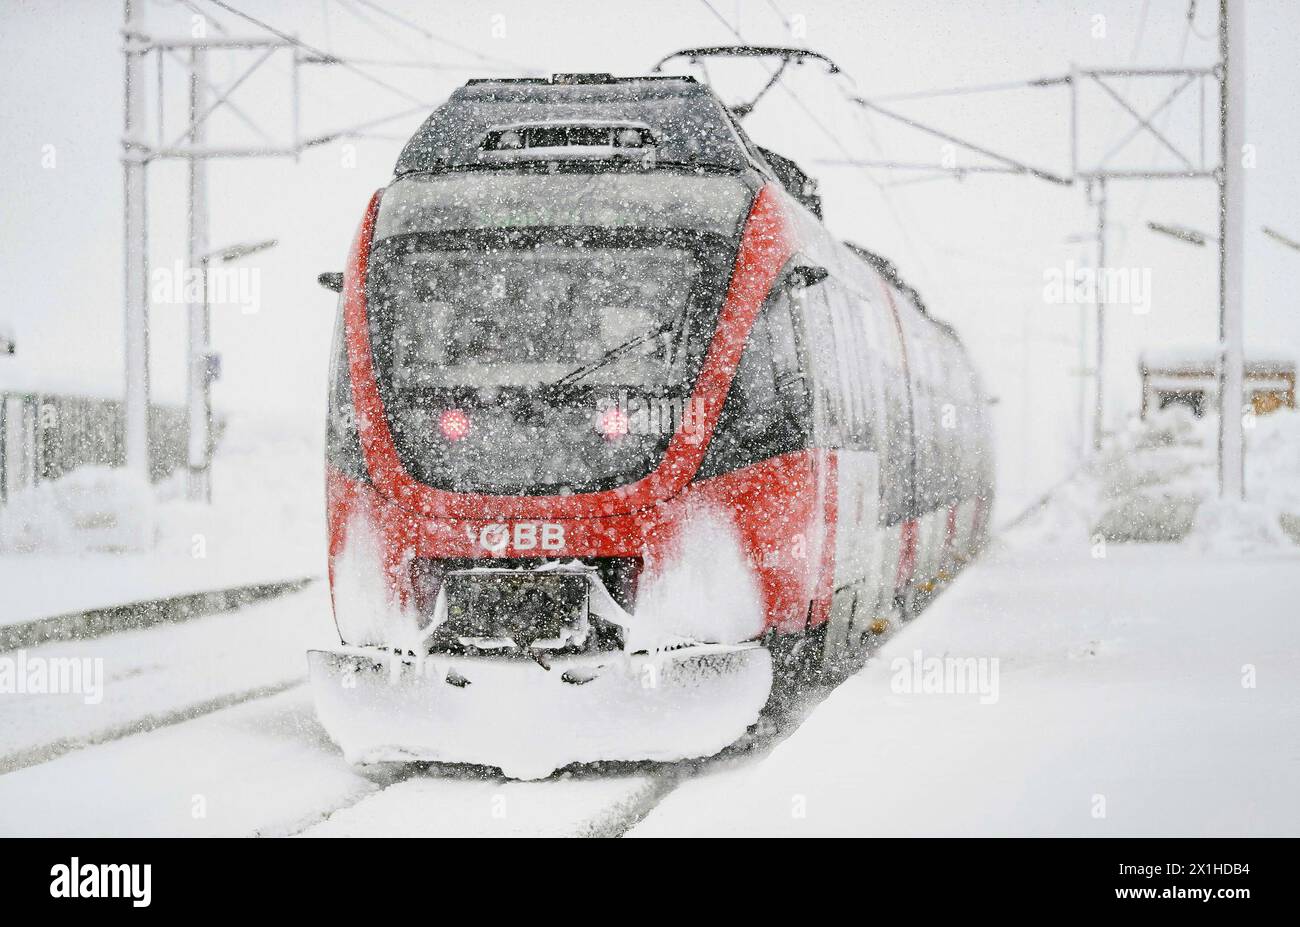 ABD0099 20190109 - SAALFELDEN - ÖSTERREICH: ++ THEMENBILD ++ Ein Zug der ÖBB im starkem Schneefall am Mittwoch, 09. Jänner 2019, in Saalfelden. In weiten Teilen Österreichs sind in den letzten Tagen erhebliche Mengen an Schnee gefallen. - FOTO: APA/EXPA/JFK - 20190109 PD5068 - Rechteinfo: Rights Managed (RM) Stock Photo